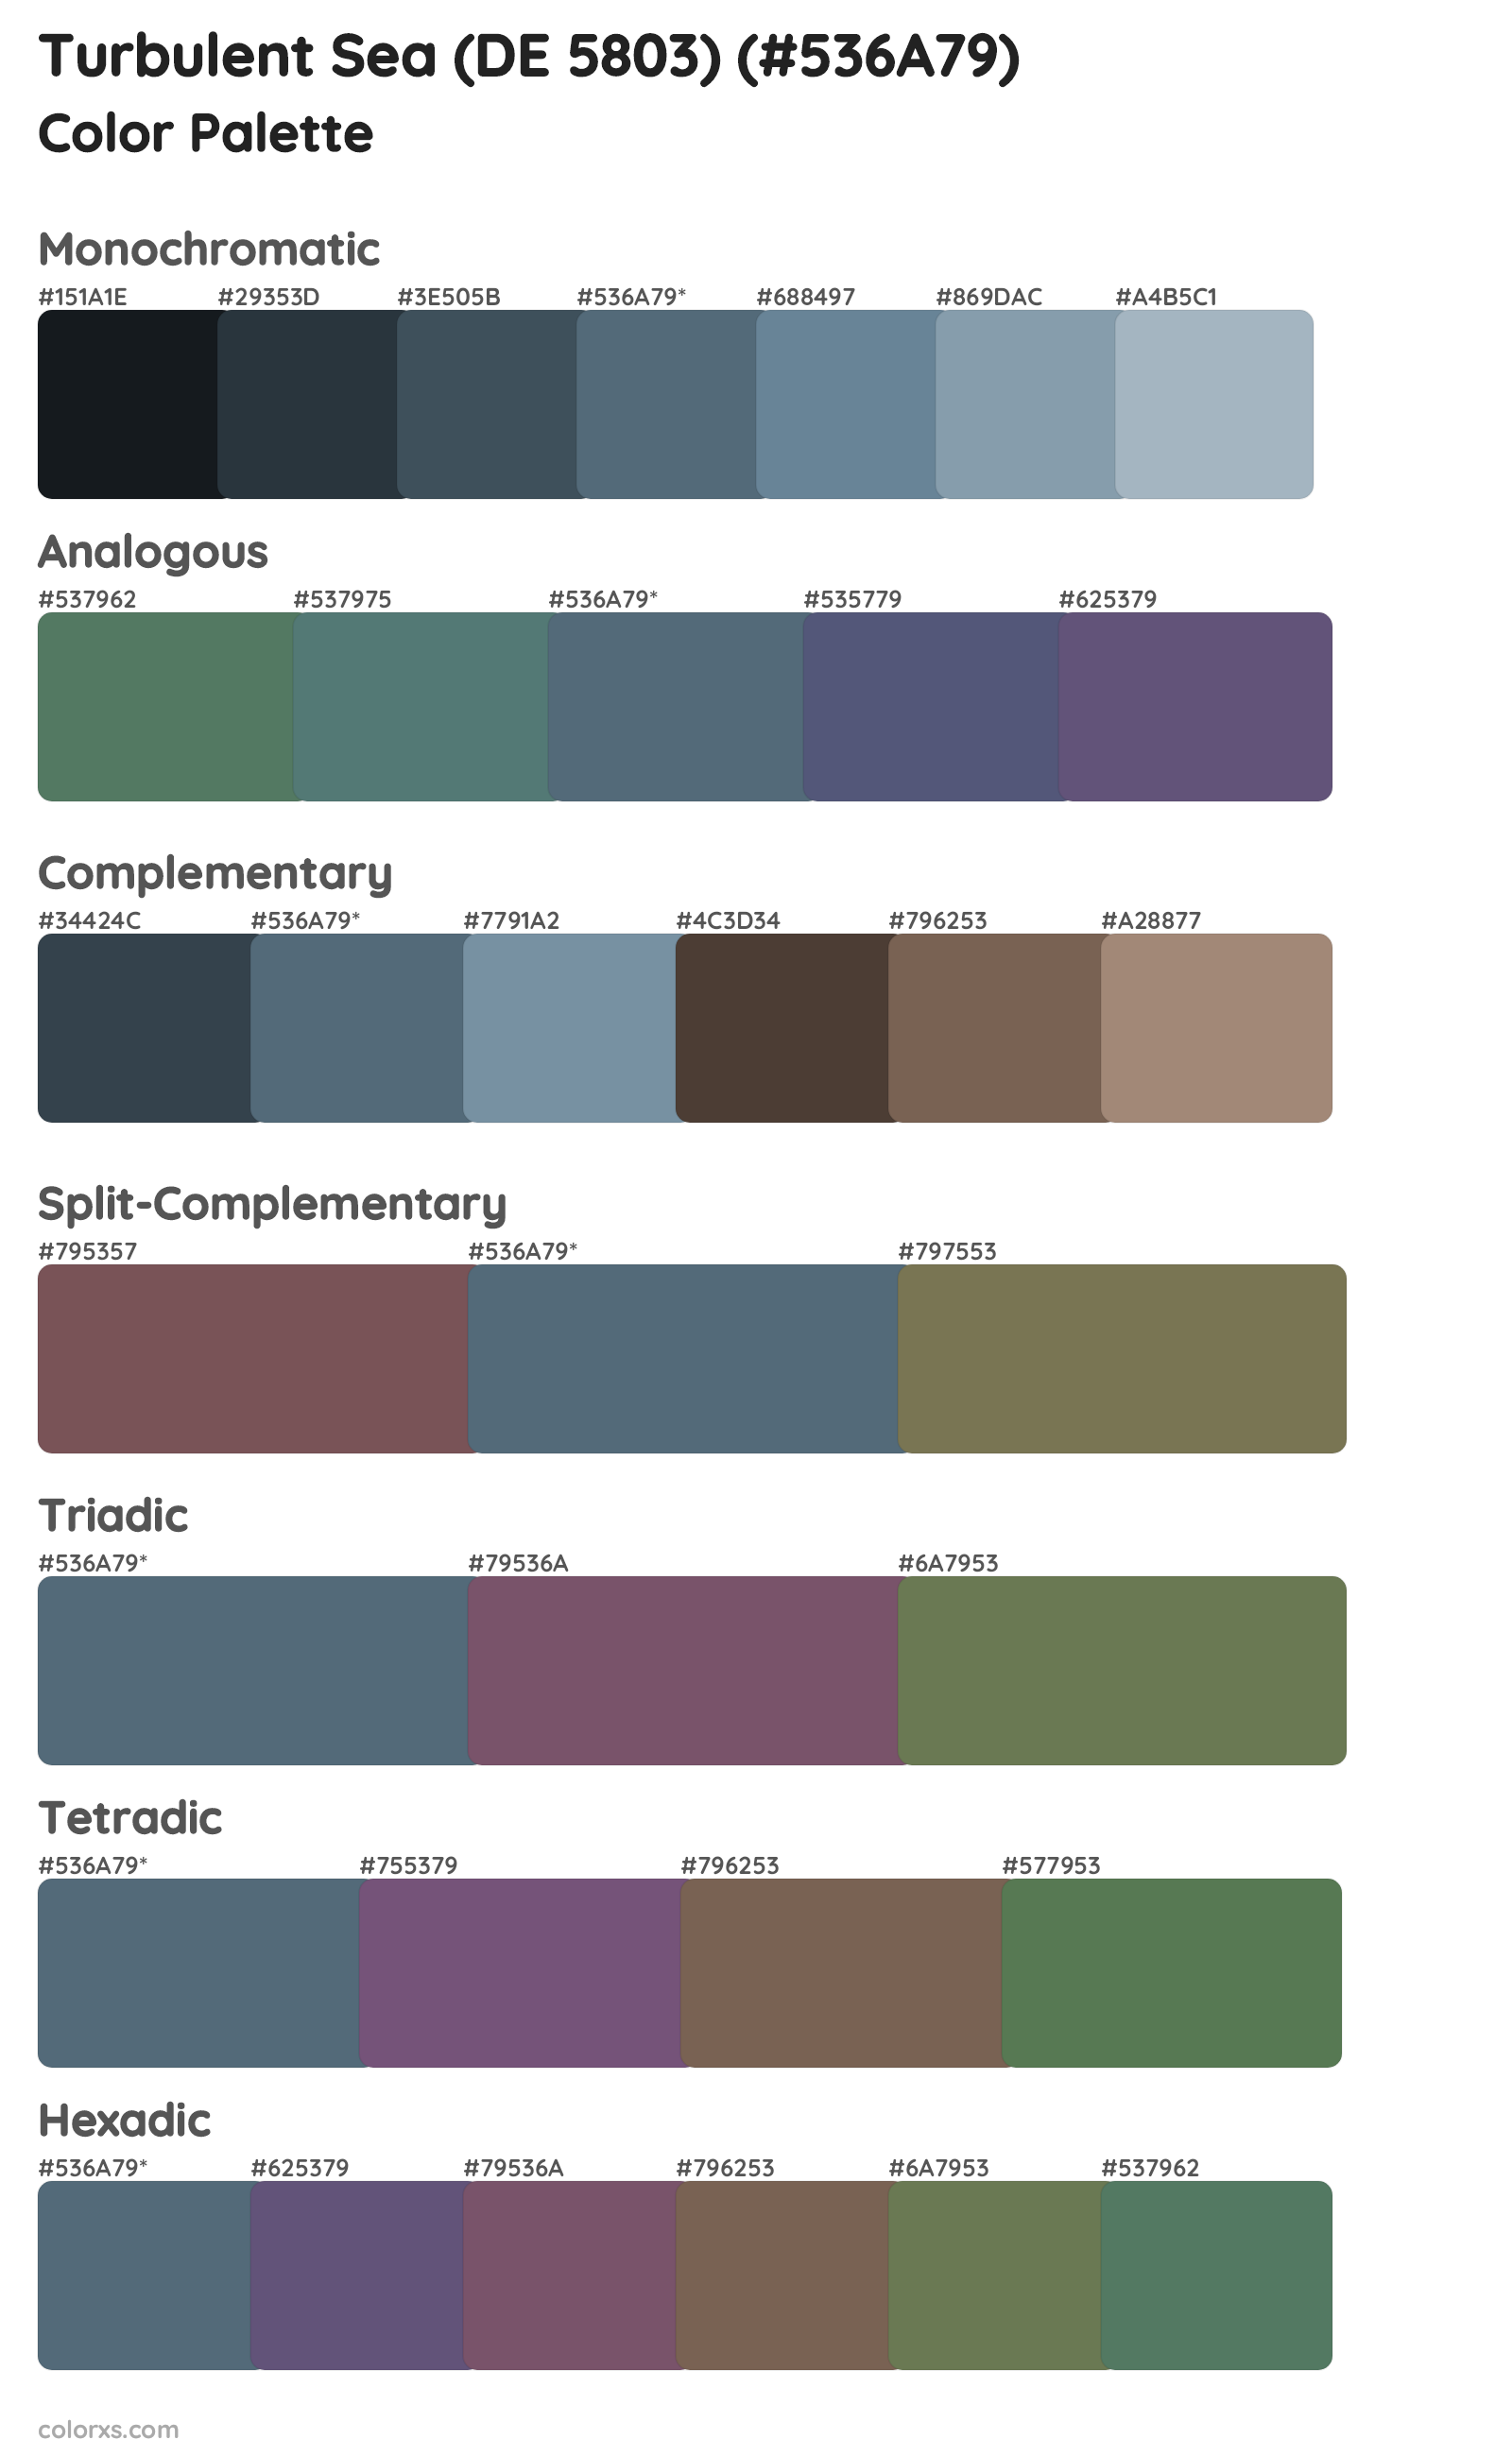 Turbulent Sea (DE 5803) Color Scheme Palettes